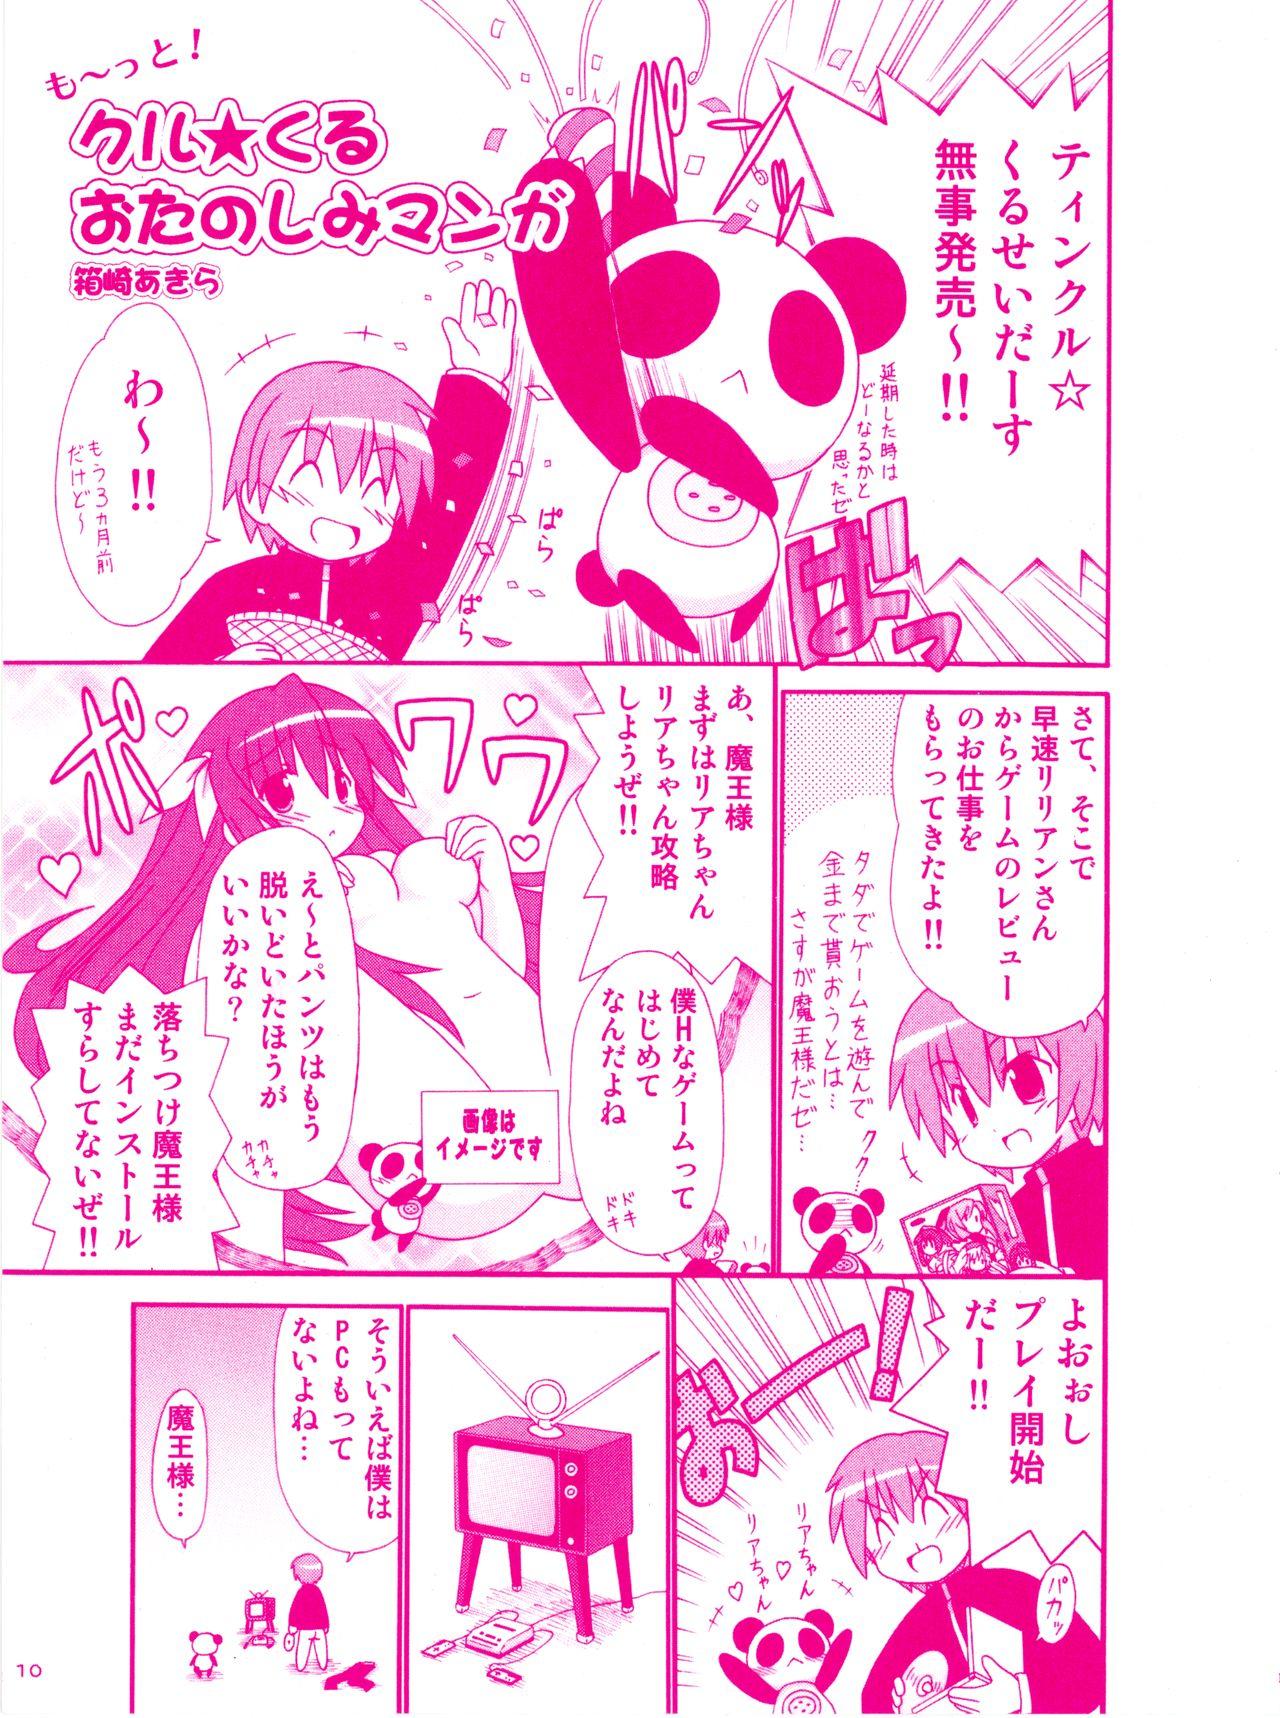 Man Twinkle☆Crusaders Kurukuru Most Secret Booklet - Twinkle crusaders She - Page 7